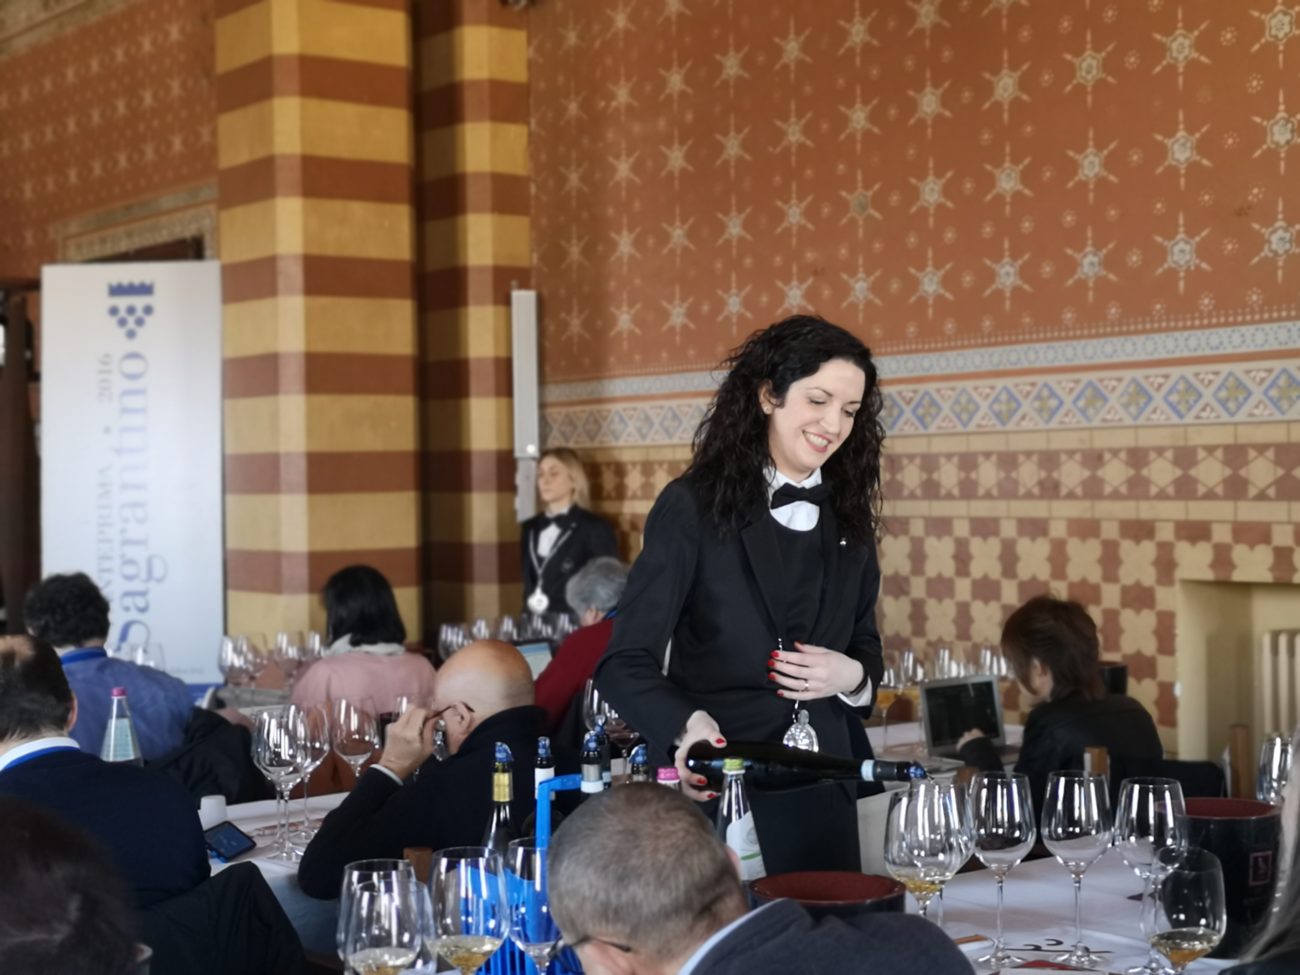 Vinopolitana e app: così l'Anteprima Sagrantino innova le anteprime del vino italiano 